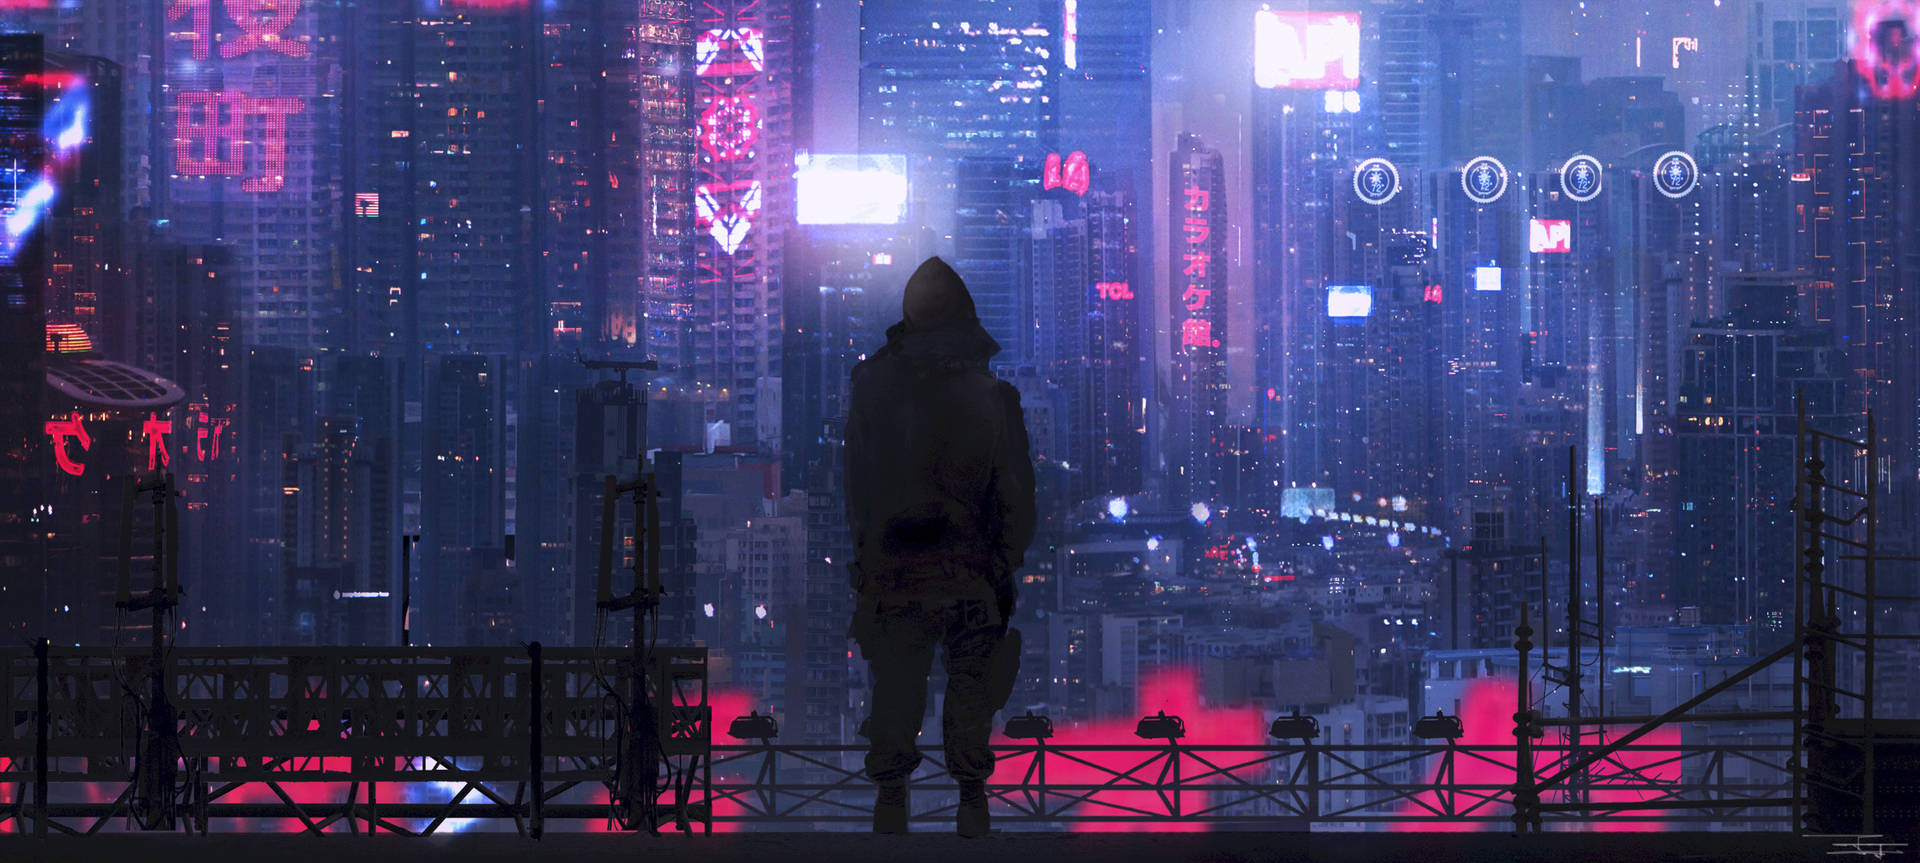 Cyberpunk City Wallpaper Images